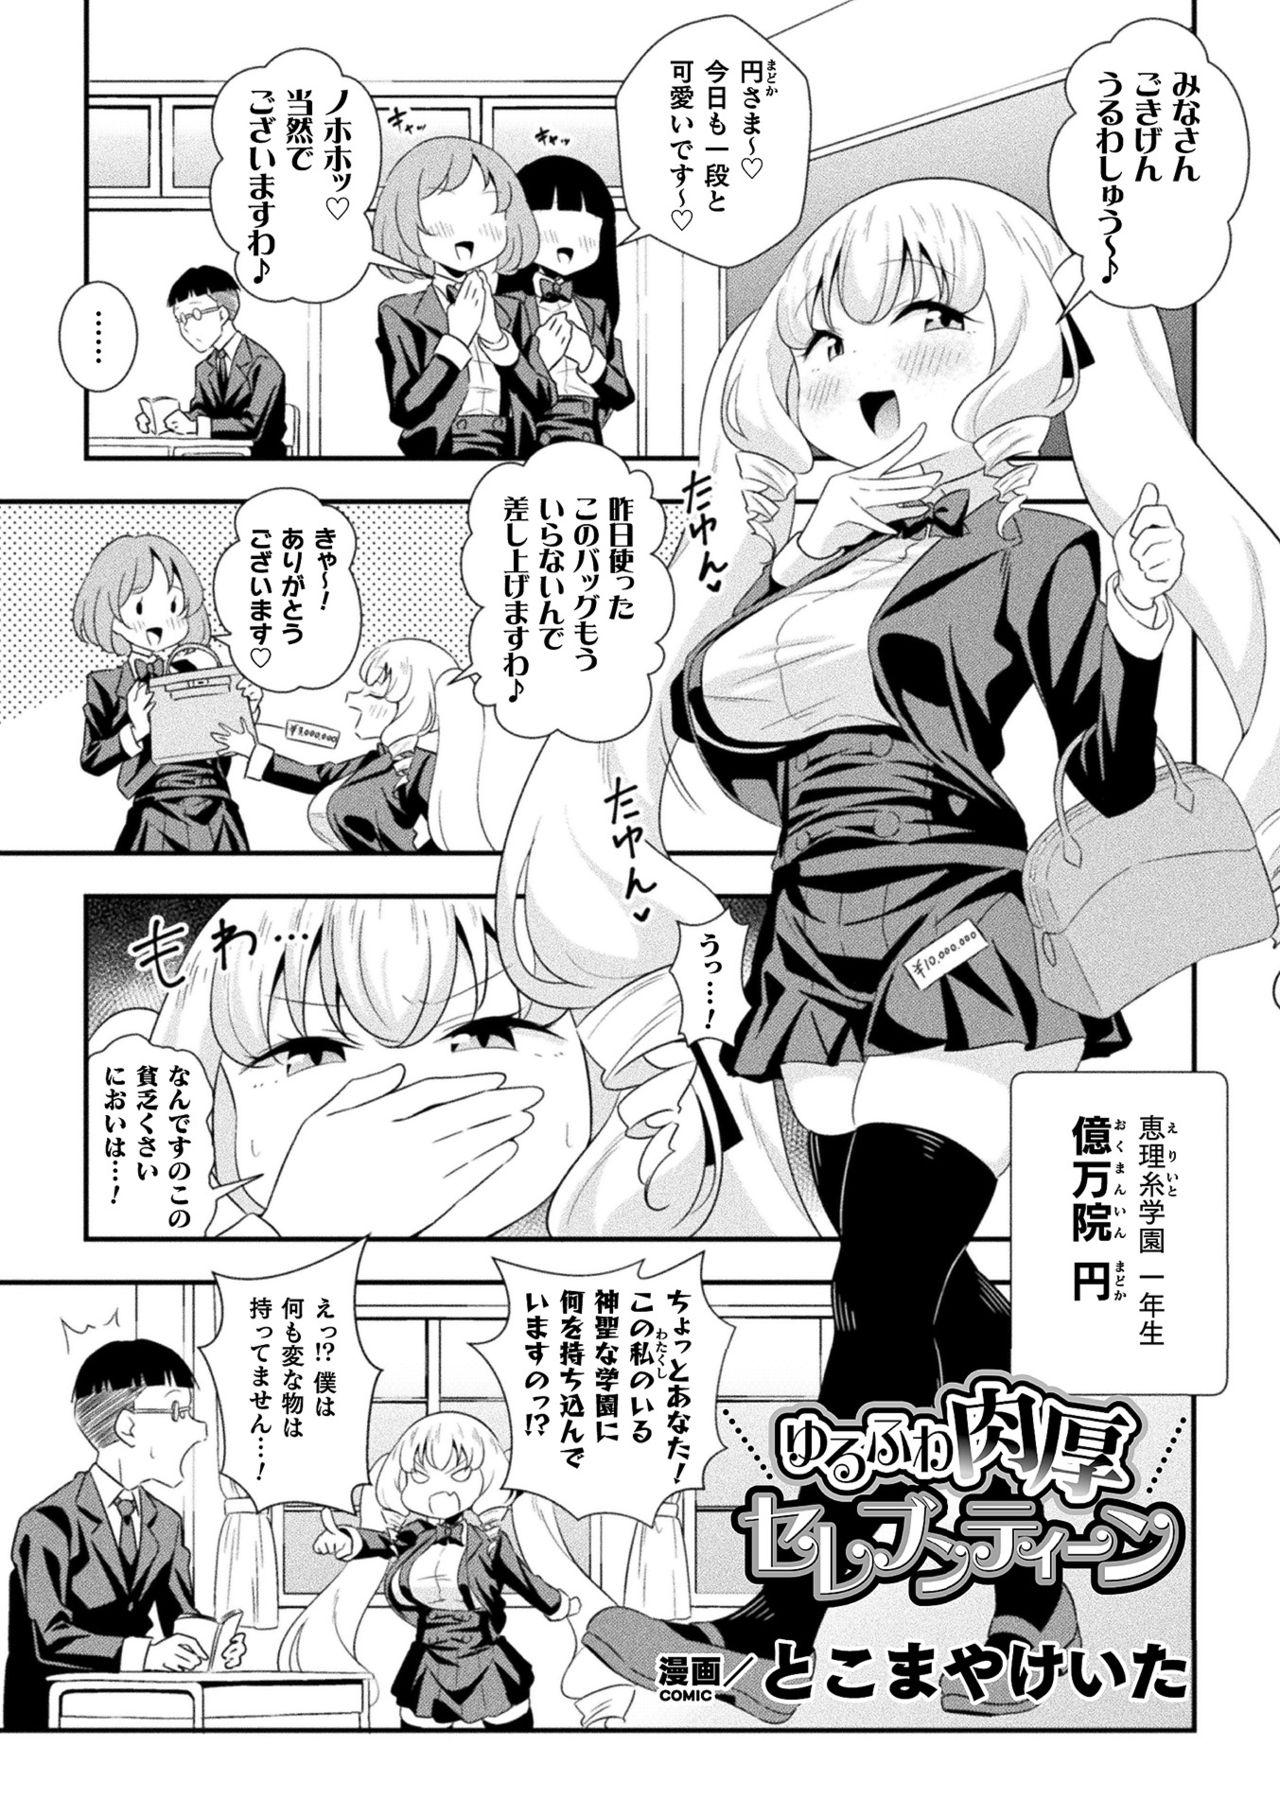 Work 2D Comic Magazine - Syukusyouka Hiroin Kyousei Onahole Keikaku Vol. 2 Virginity - Page 3